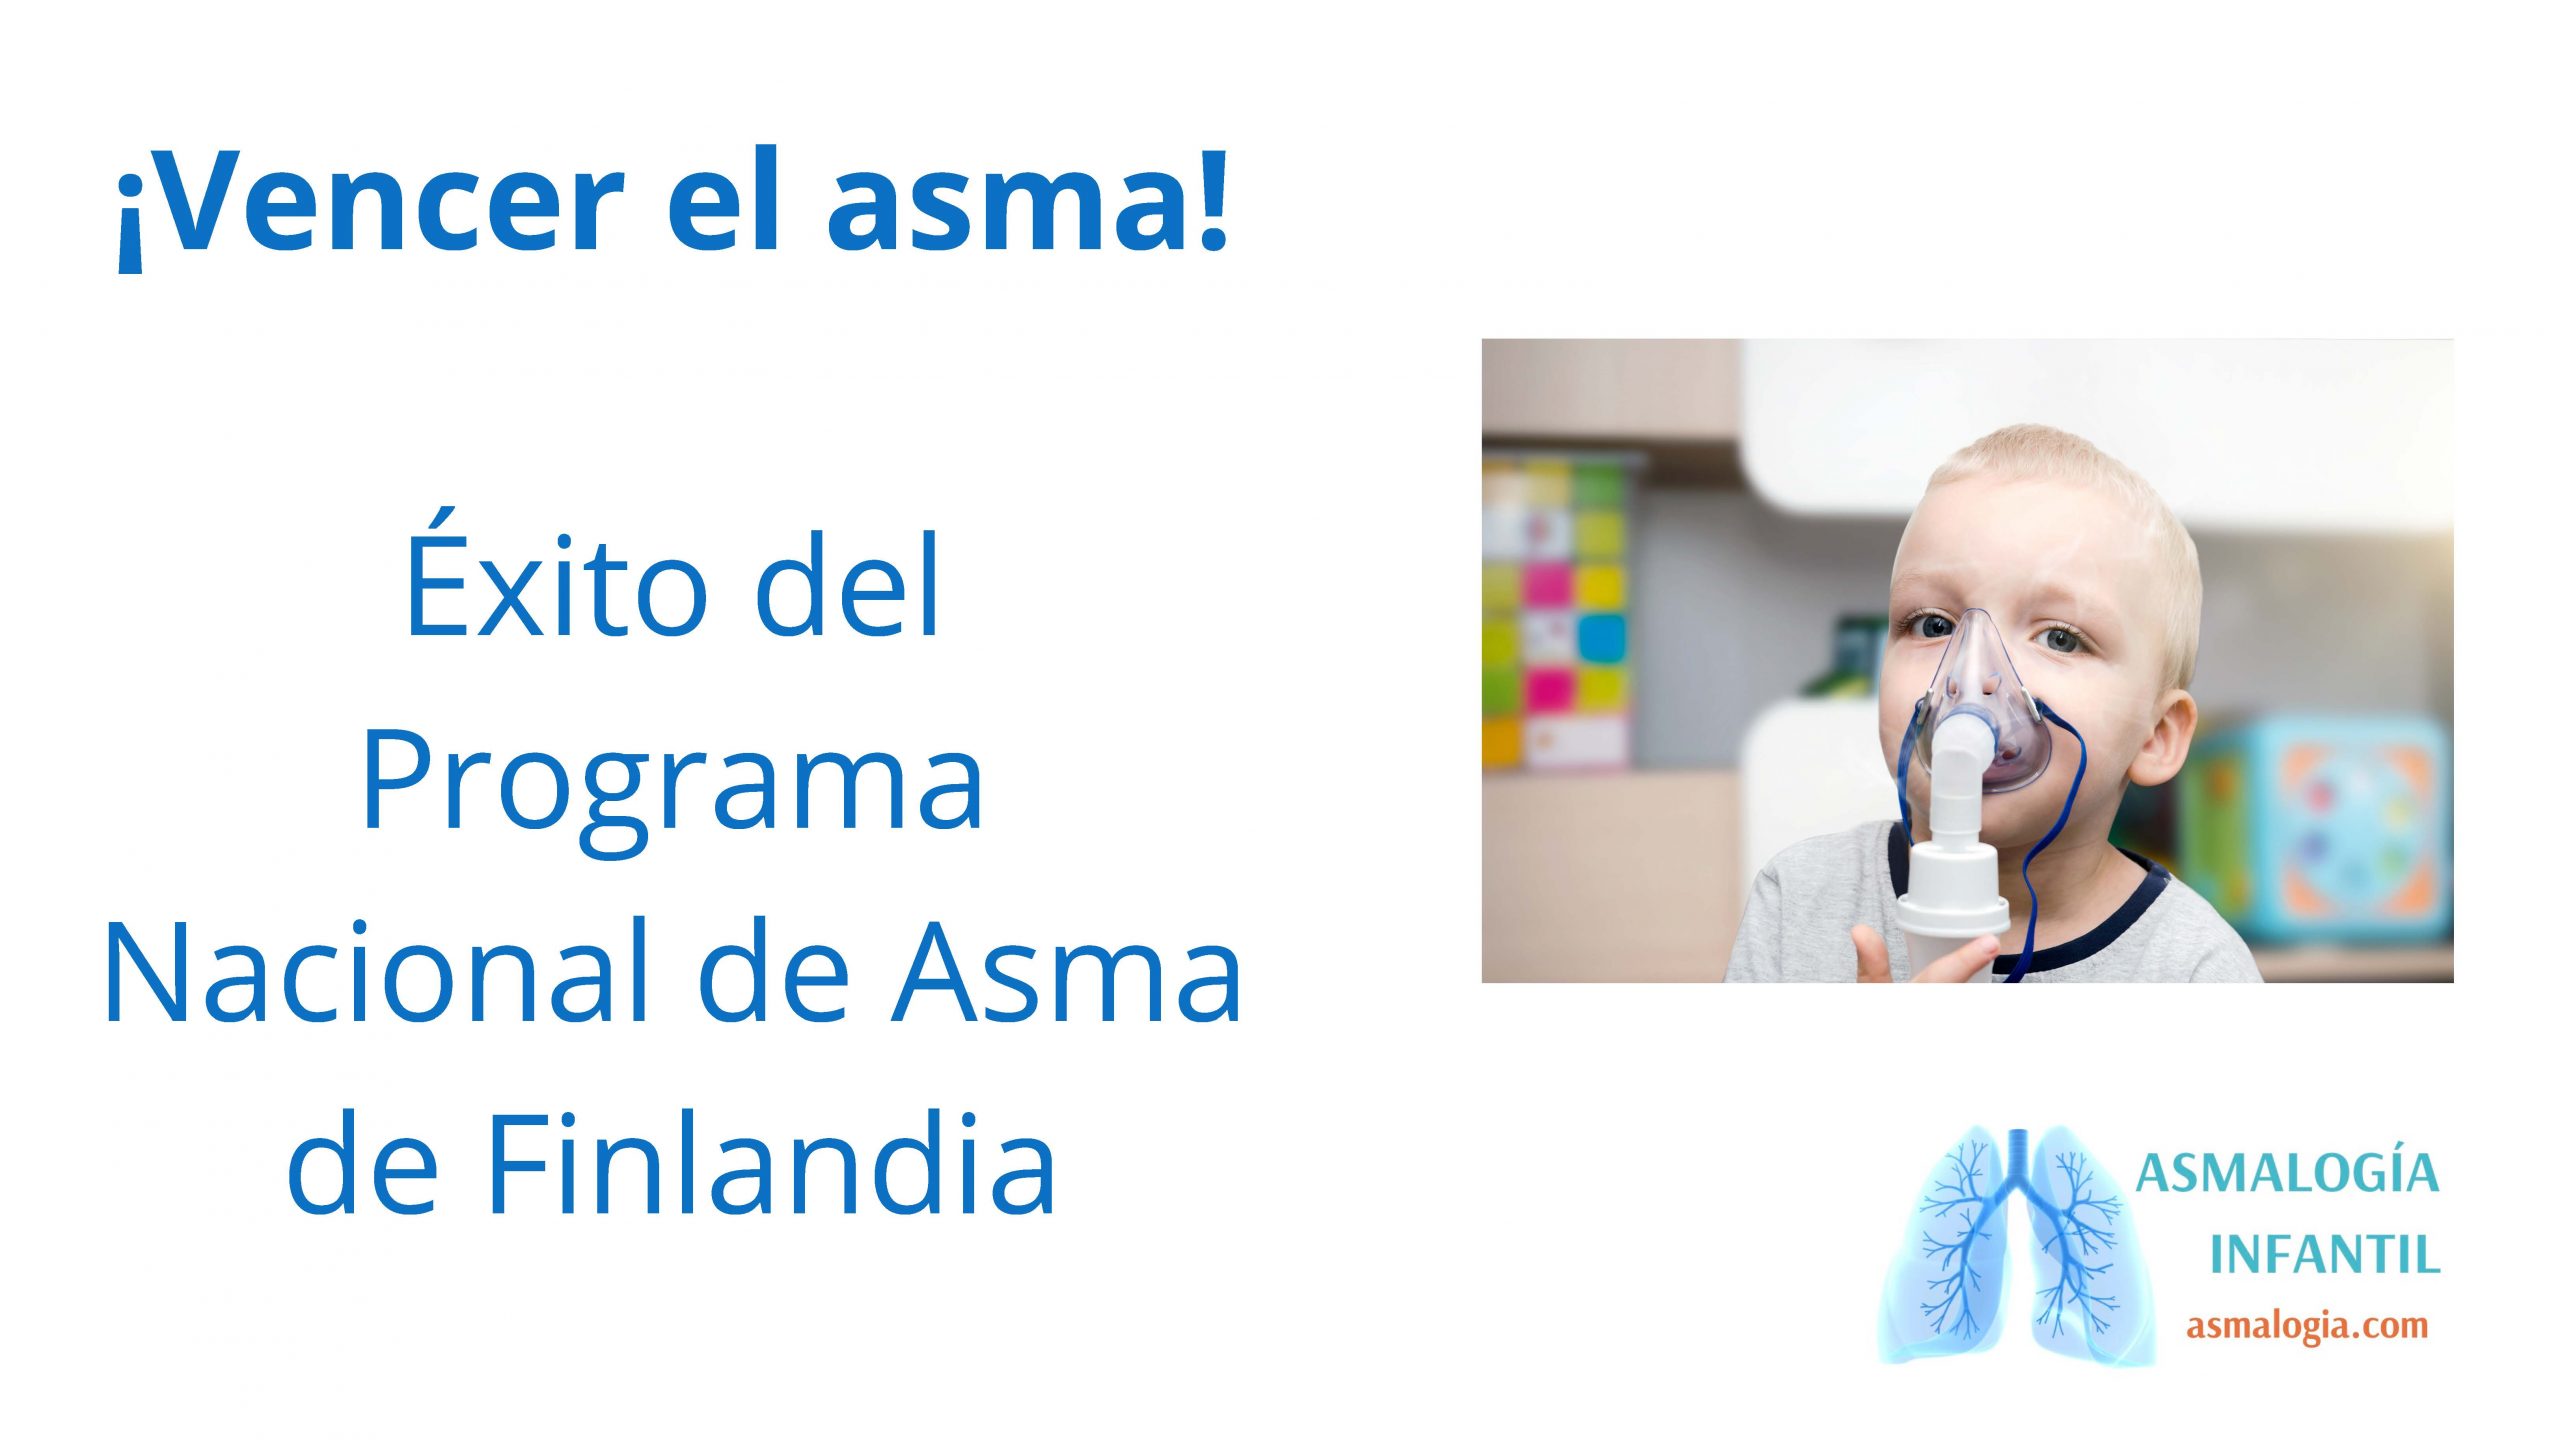 Vencer el asma. Éxito del Programa Finlandés de asma (asmaolgia.com)